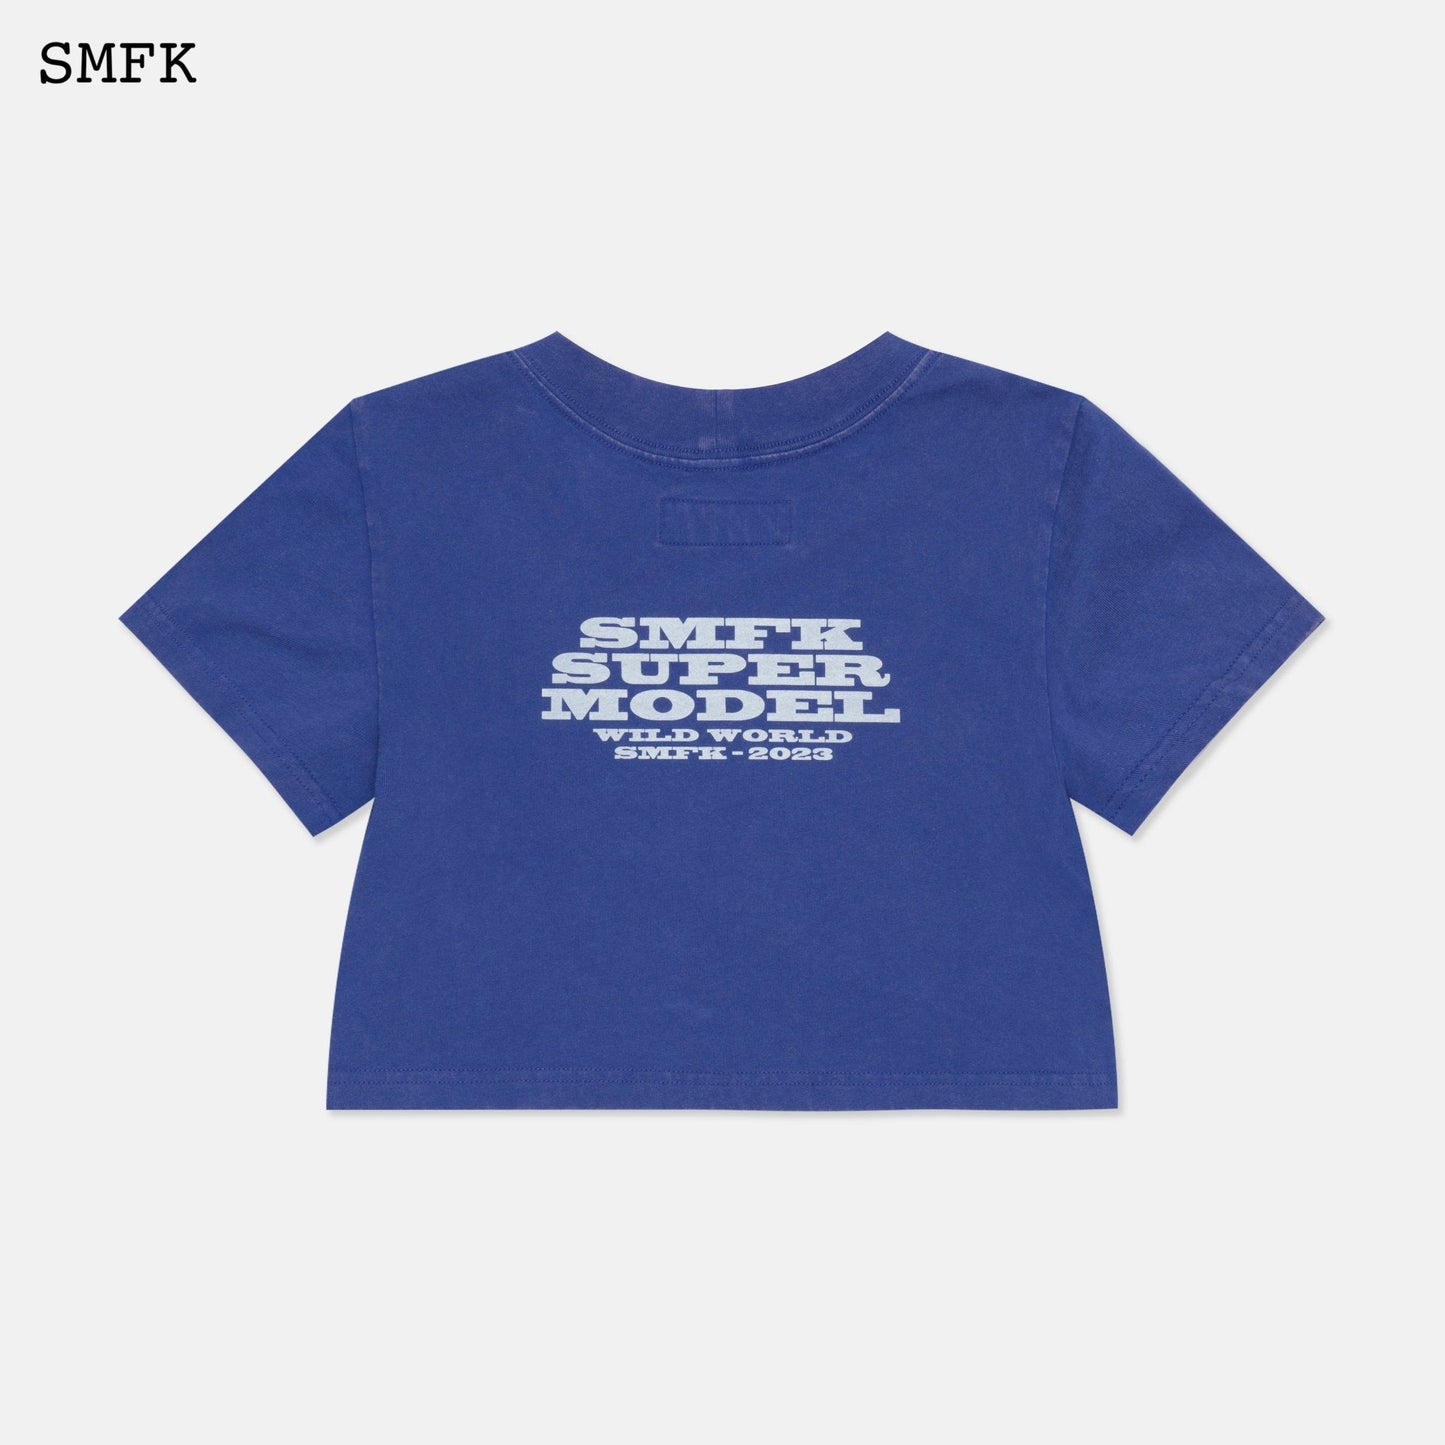 SMFK Model Navy Short T-shirt